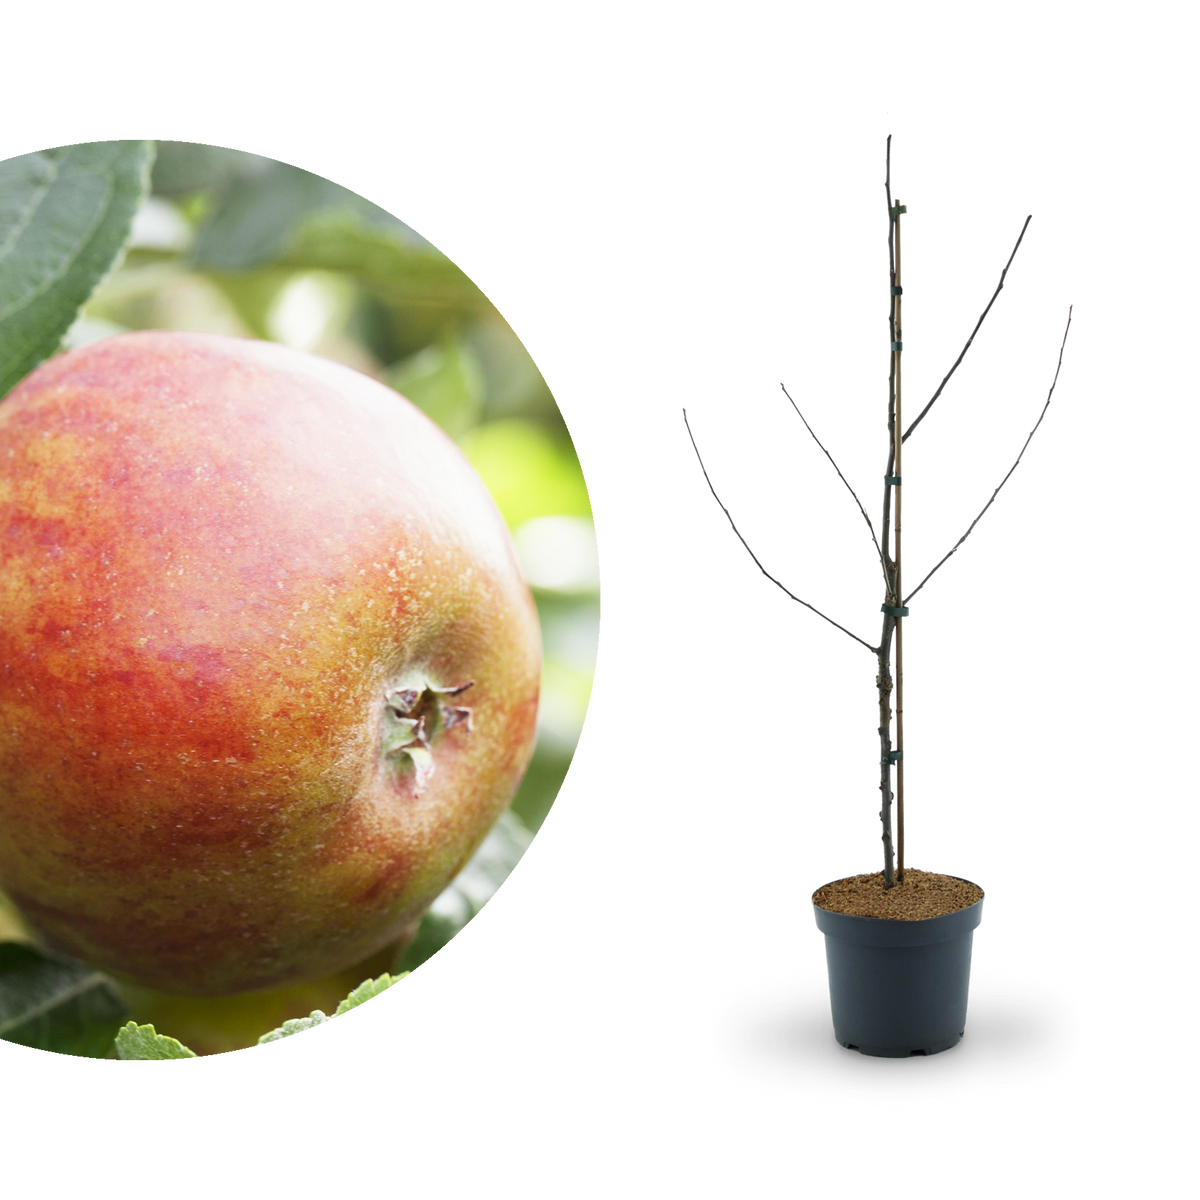 Bio-Apfelbaum 'Holsteiner Cox' Herbstapfel